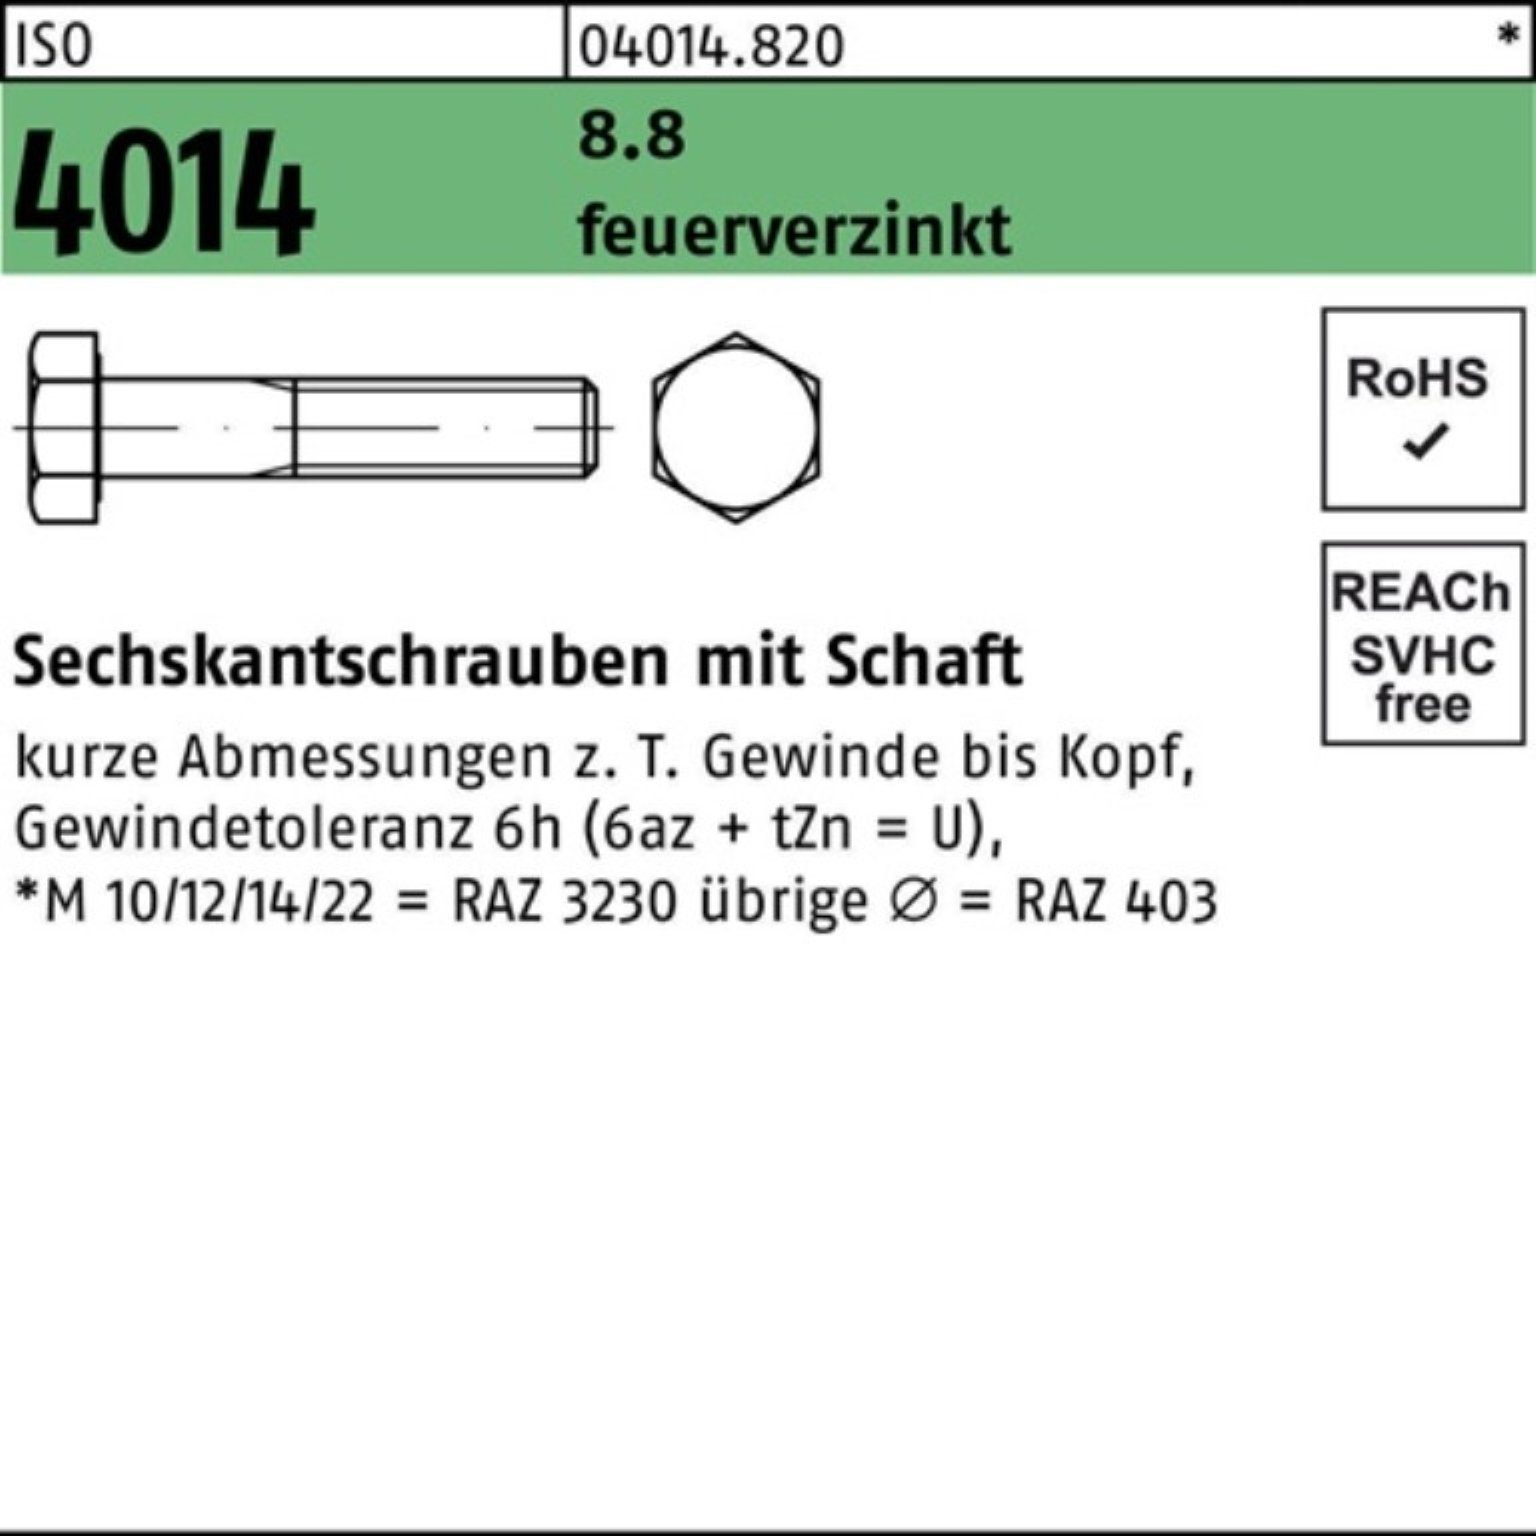 Bufab Sechskantschraube 100er Pack Sechskantschraube ISO 4014 Schaft M24x 120 8.8 feuerverz. 1